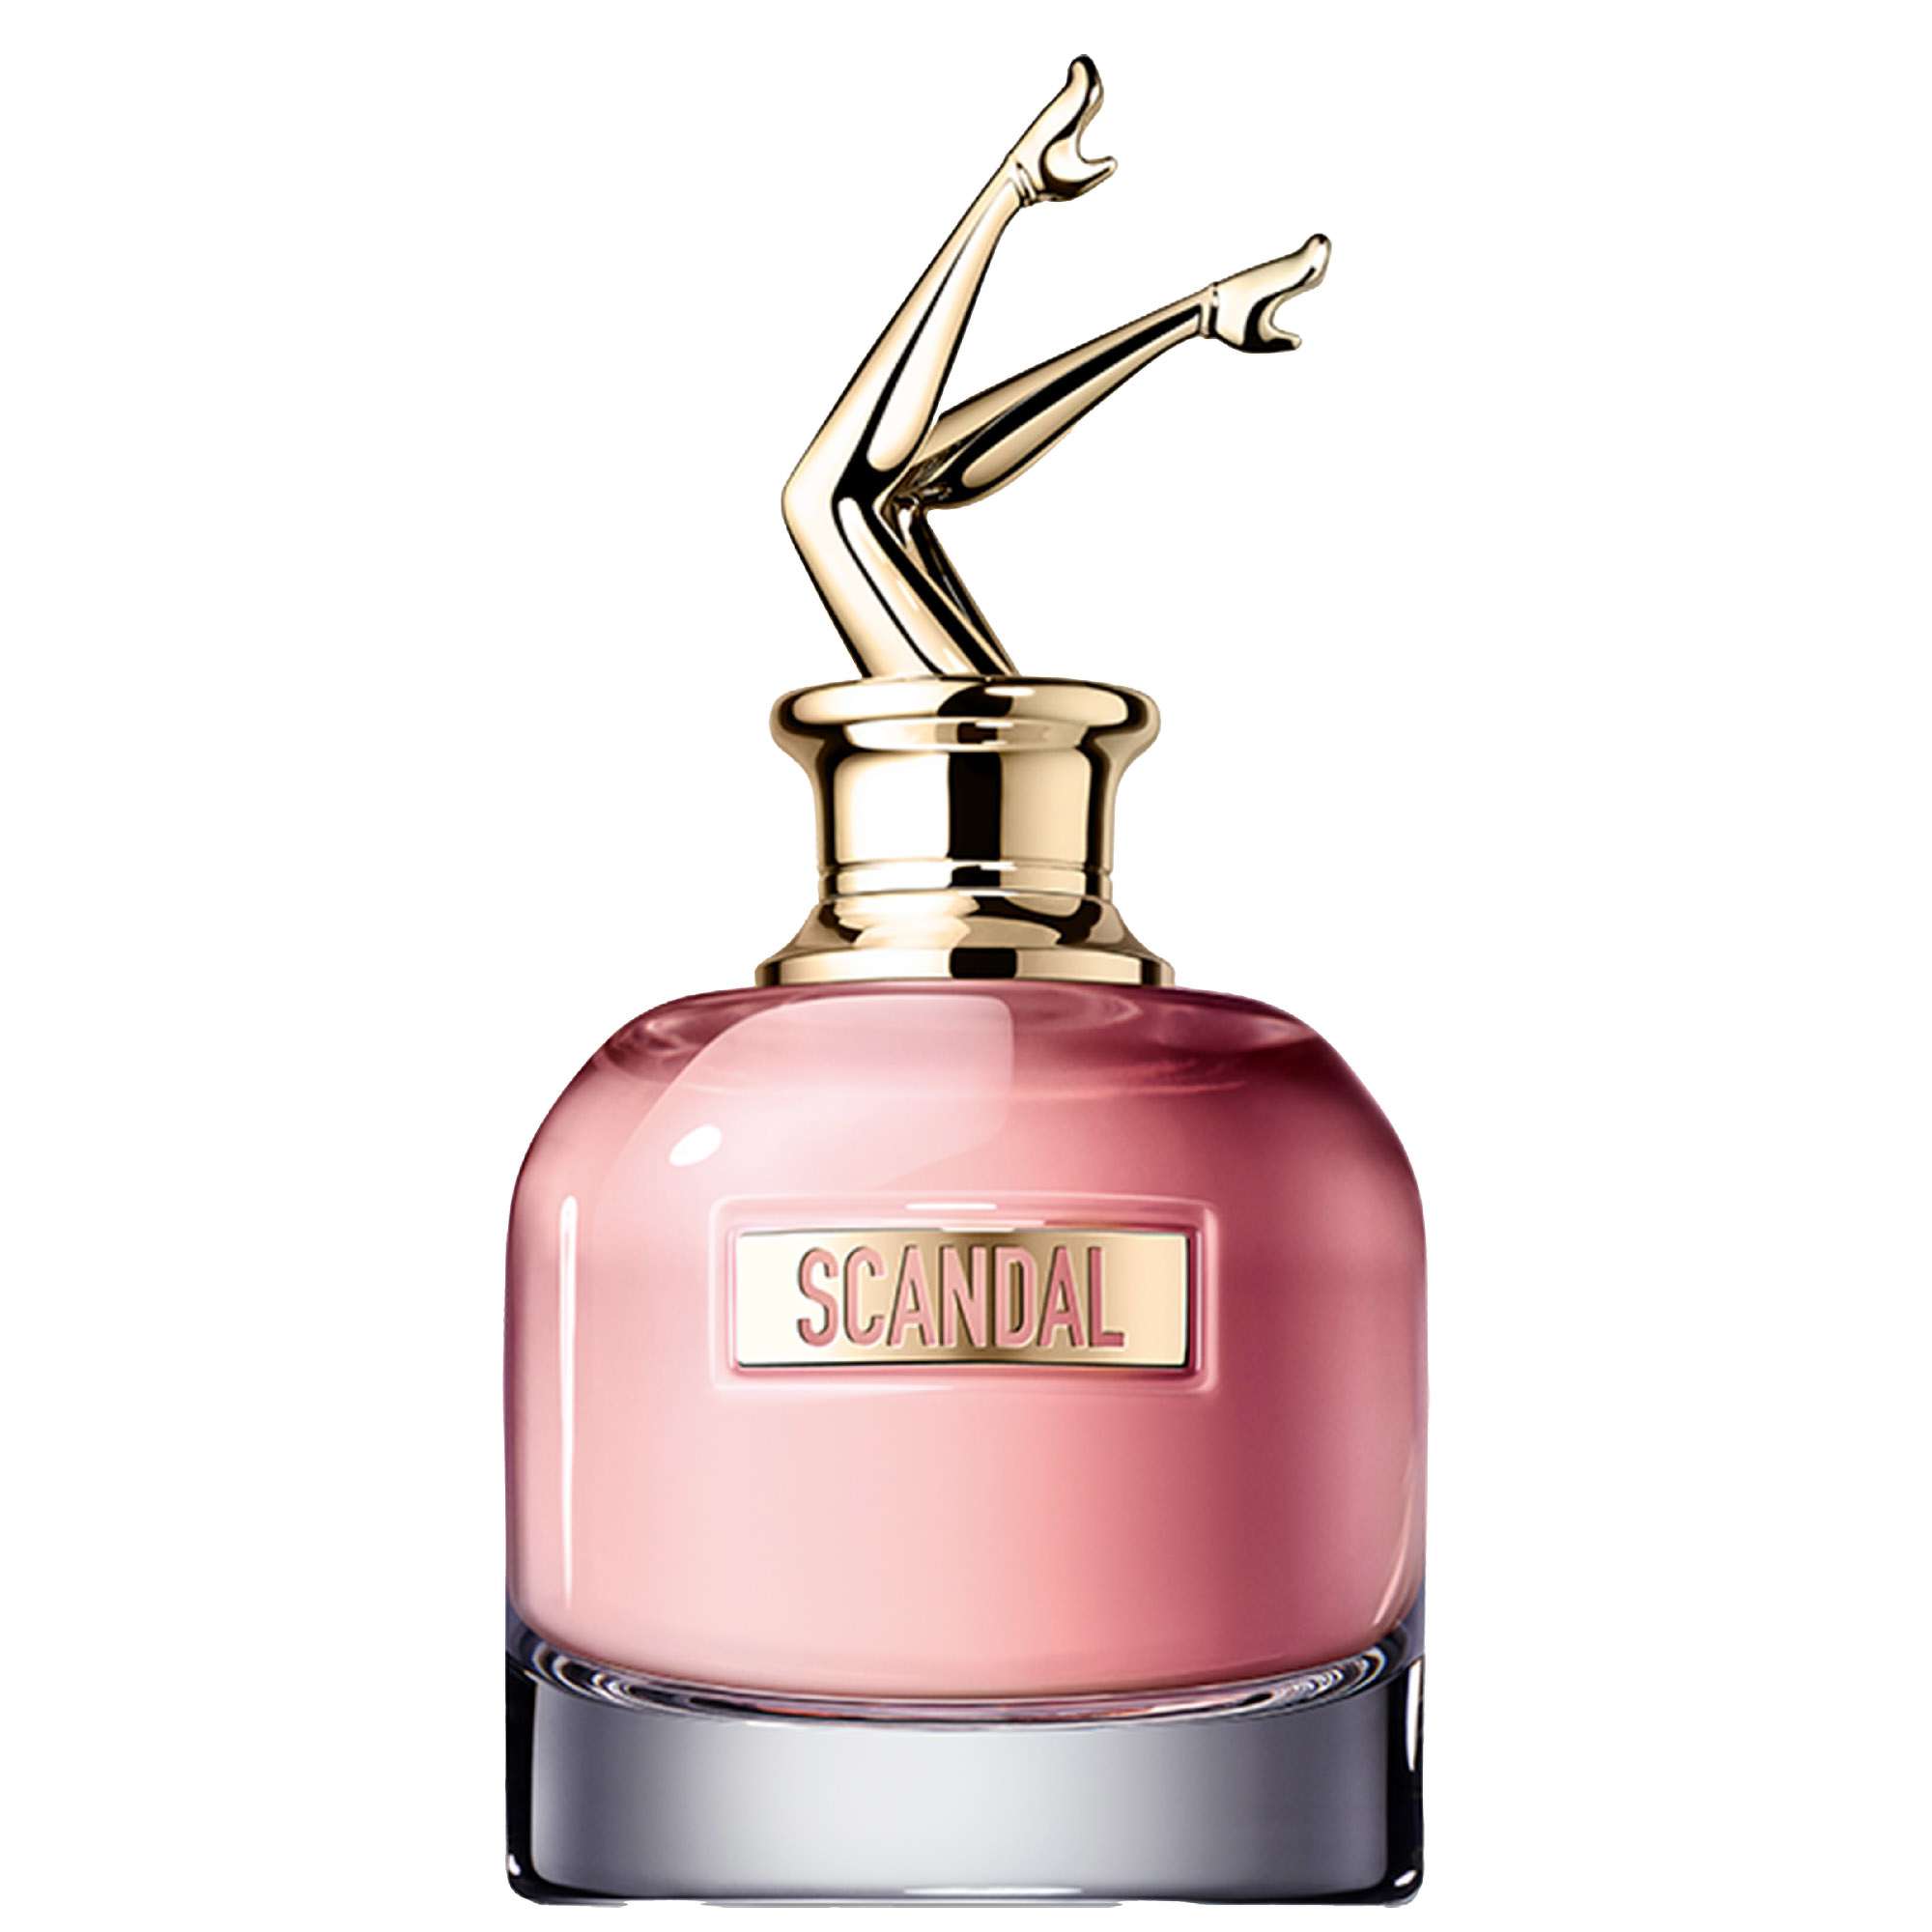 Photos - Women's Fragrance Jean Paul Gaultier Scandal Eau de Parfum 80ml 